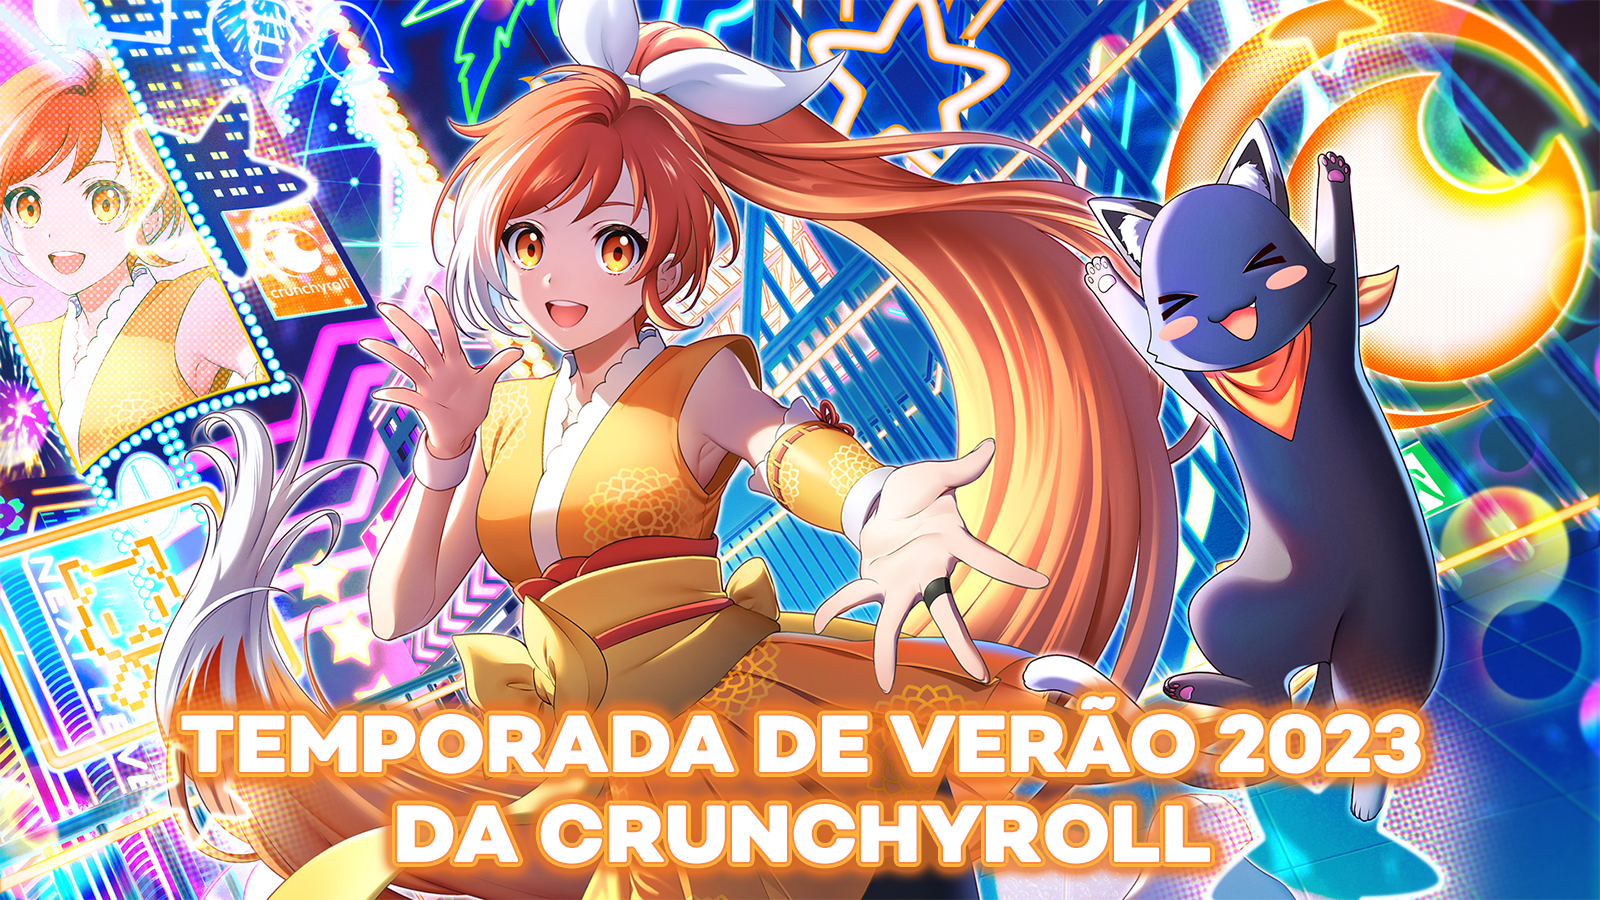 Animes dublados na Temporada de Verão 2023 na Crunchyroll, confira a lista!